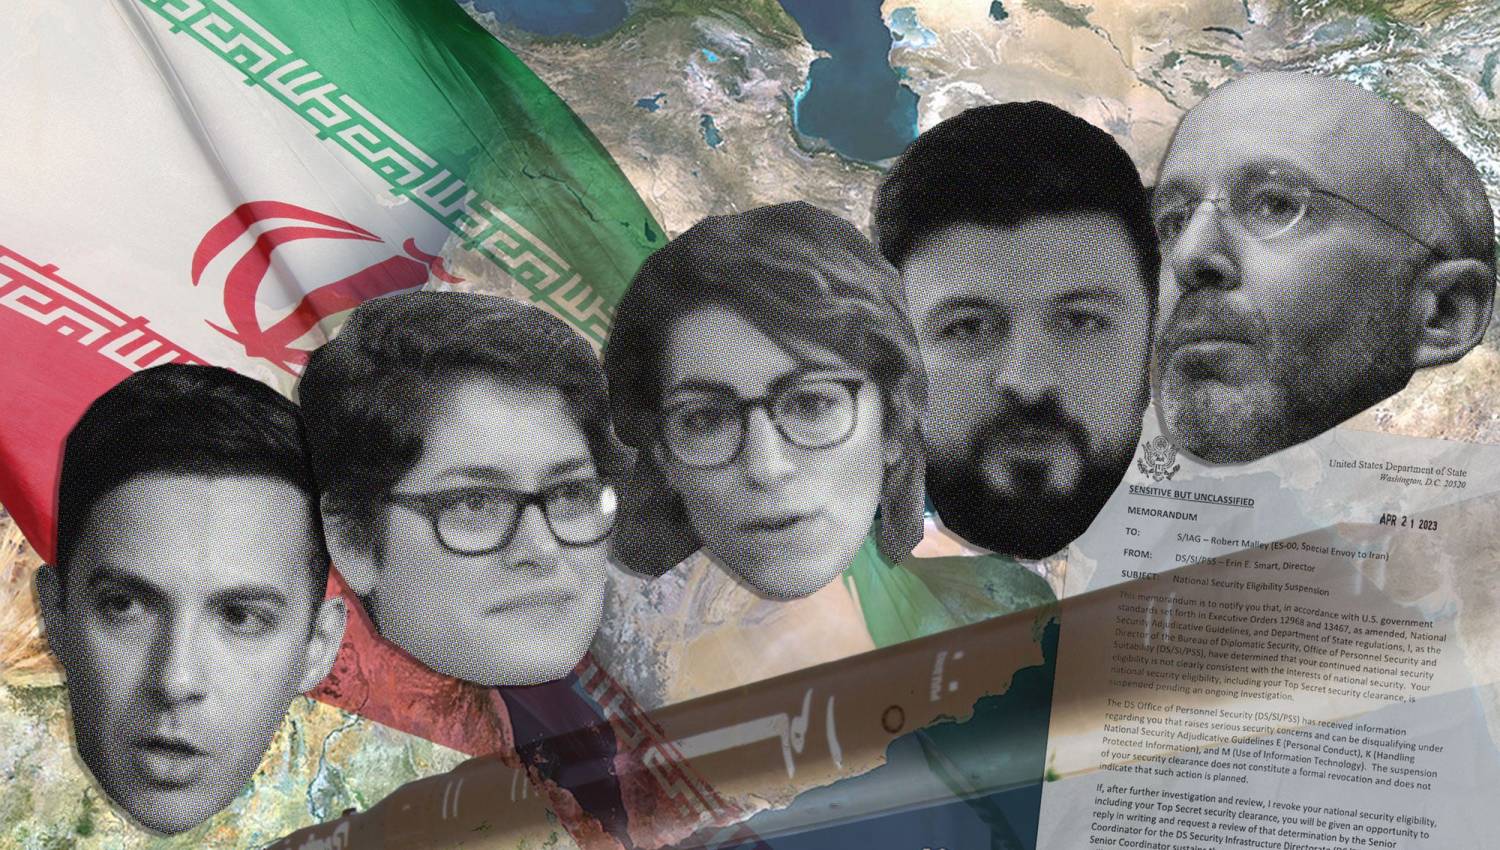 إيران إنترناشيونال وموقع سيمافور الأمريكي: داخل عملية النفوذ الإيرانية